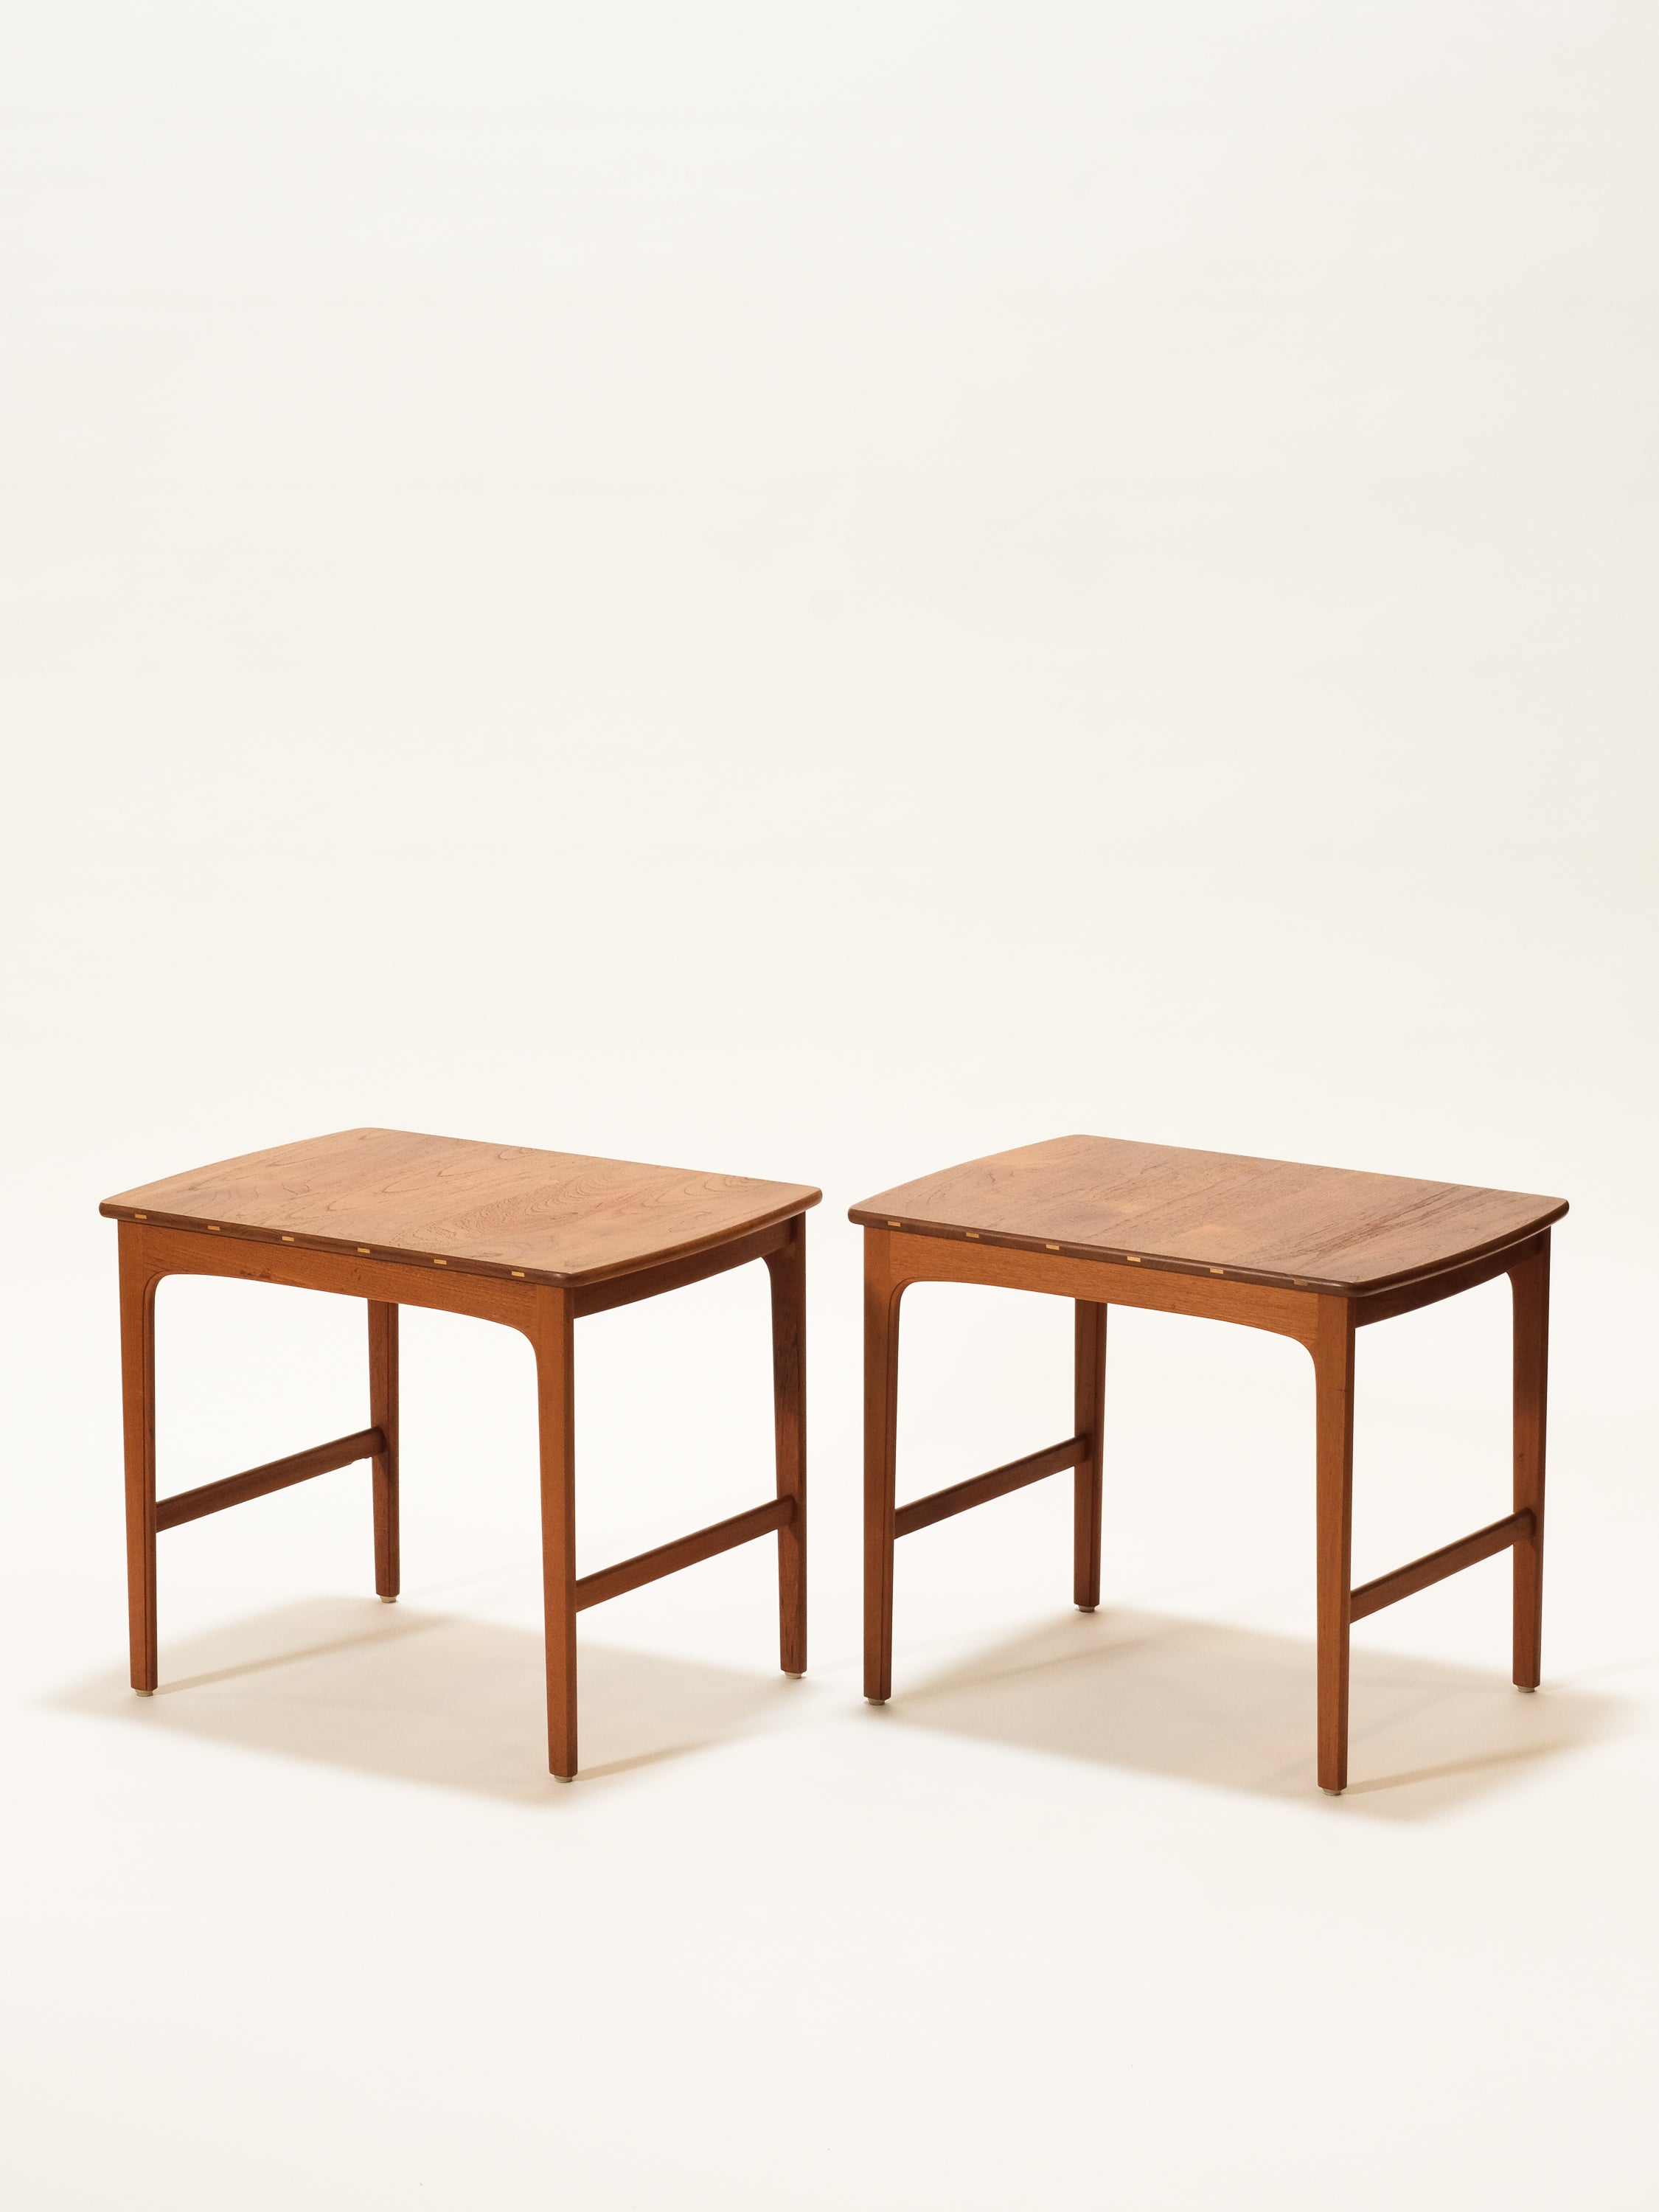 Teak Side Tables by Yngvar Sandström for Seffle Möbelfabrik, 1960s